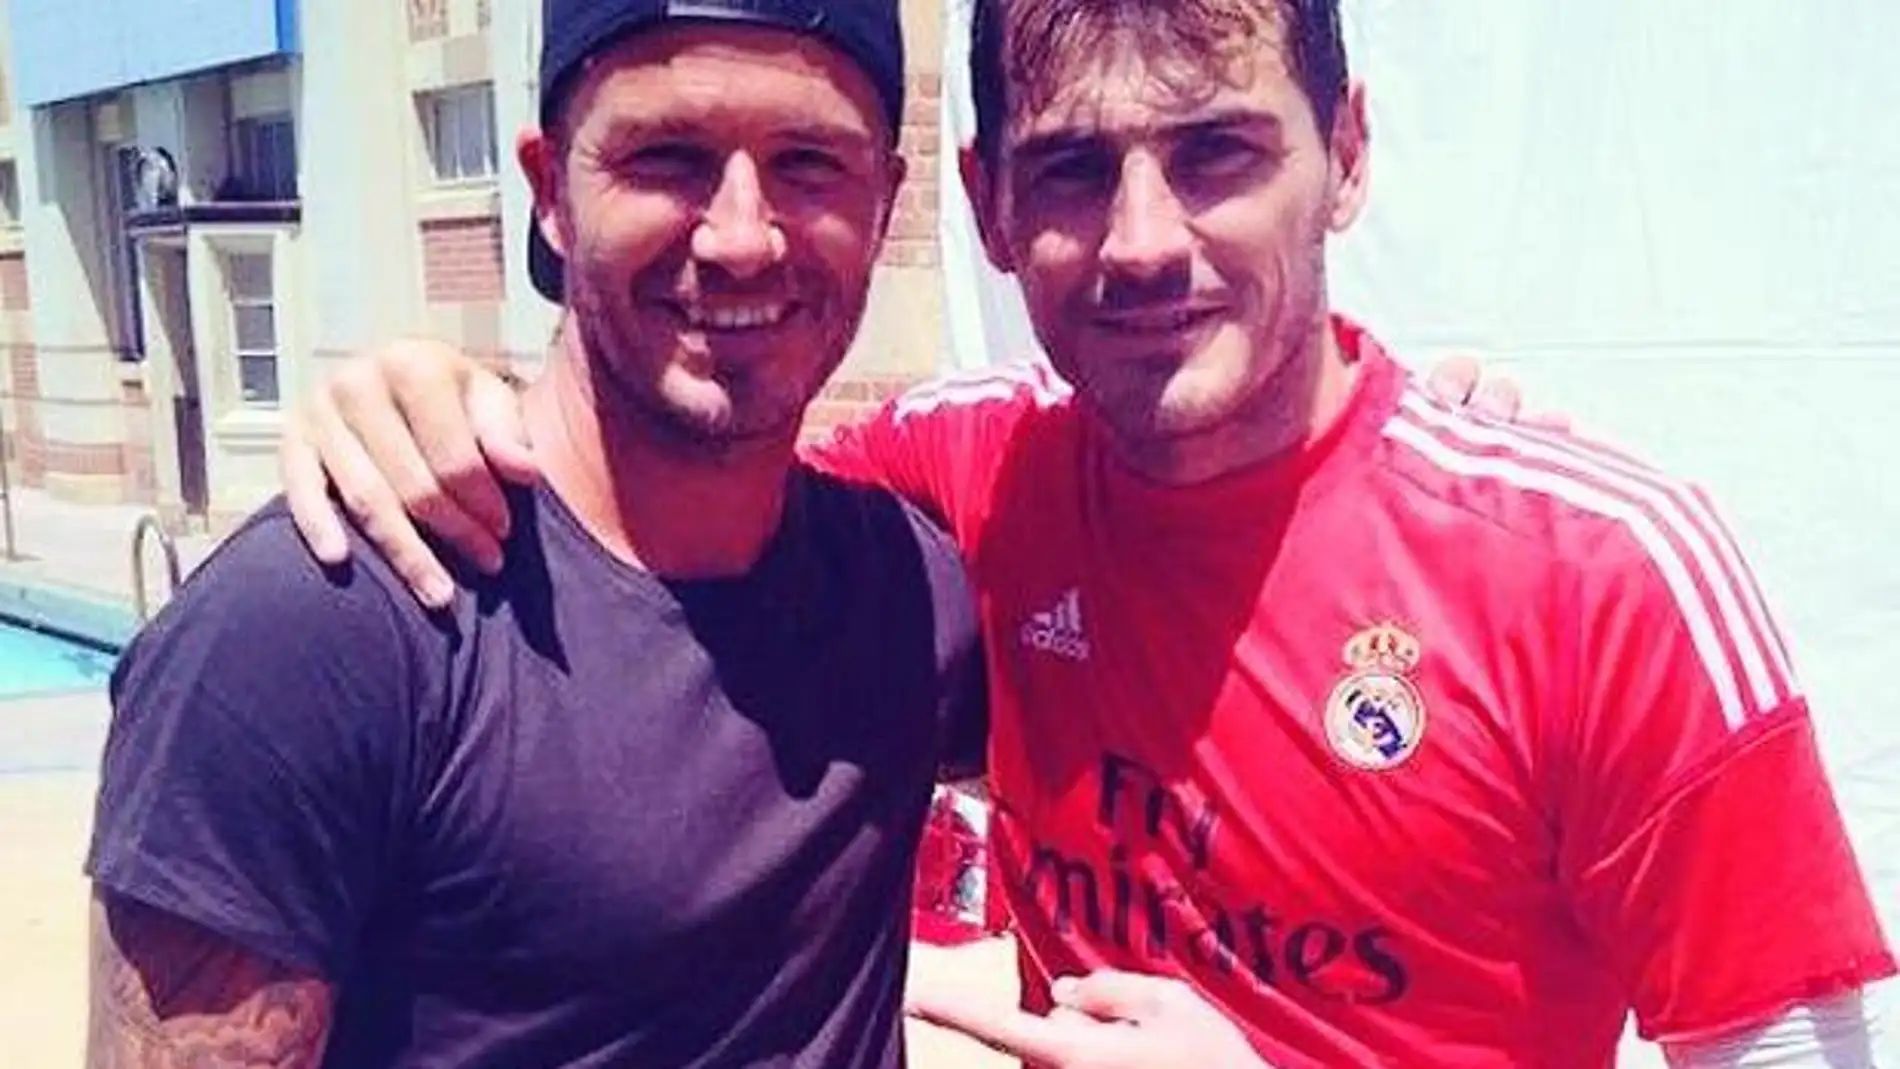 Iker Casillas y David Beckham 